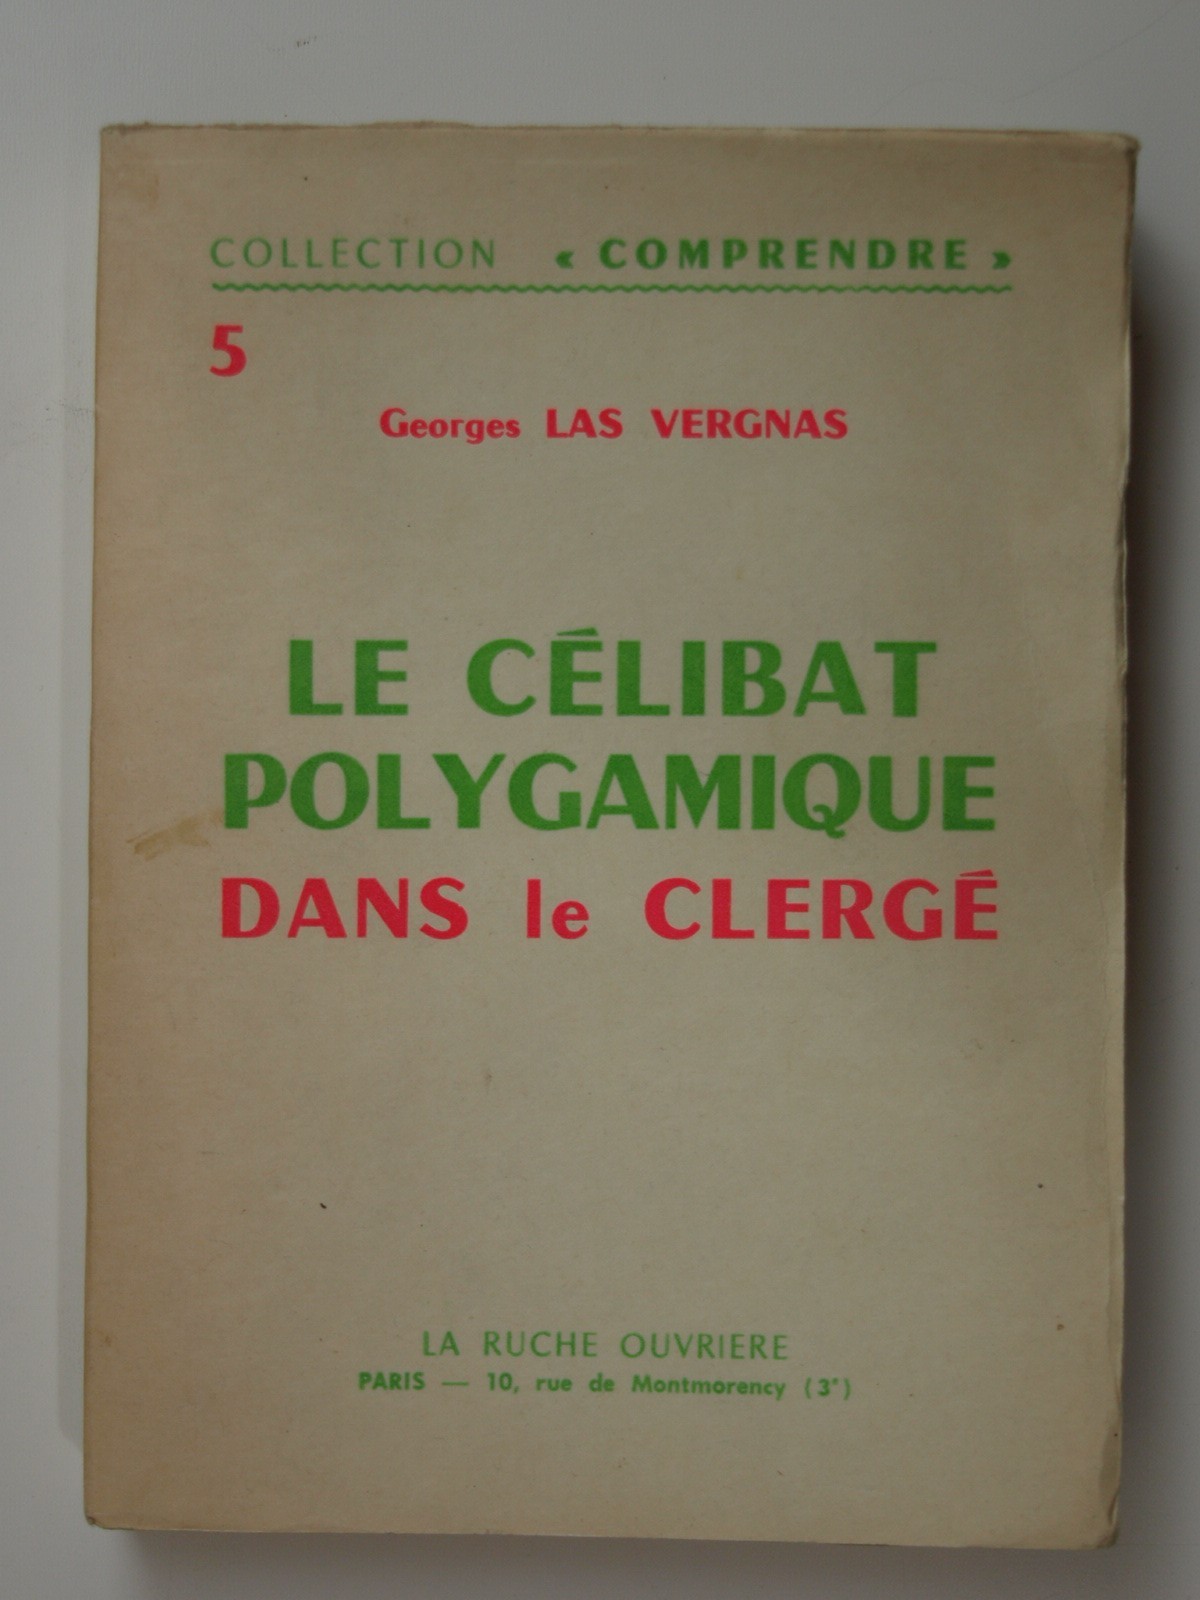 LAS VERGNAS Georges : Le Célibat polygamique dans le clergé